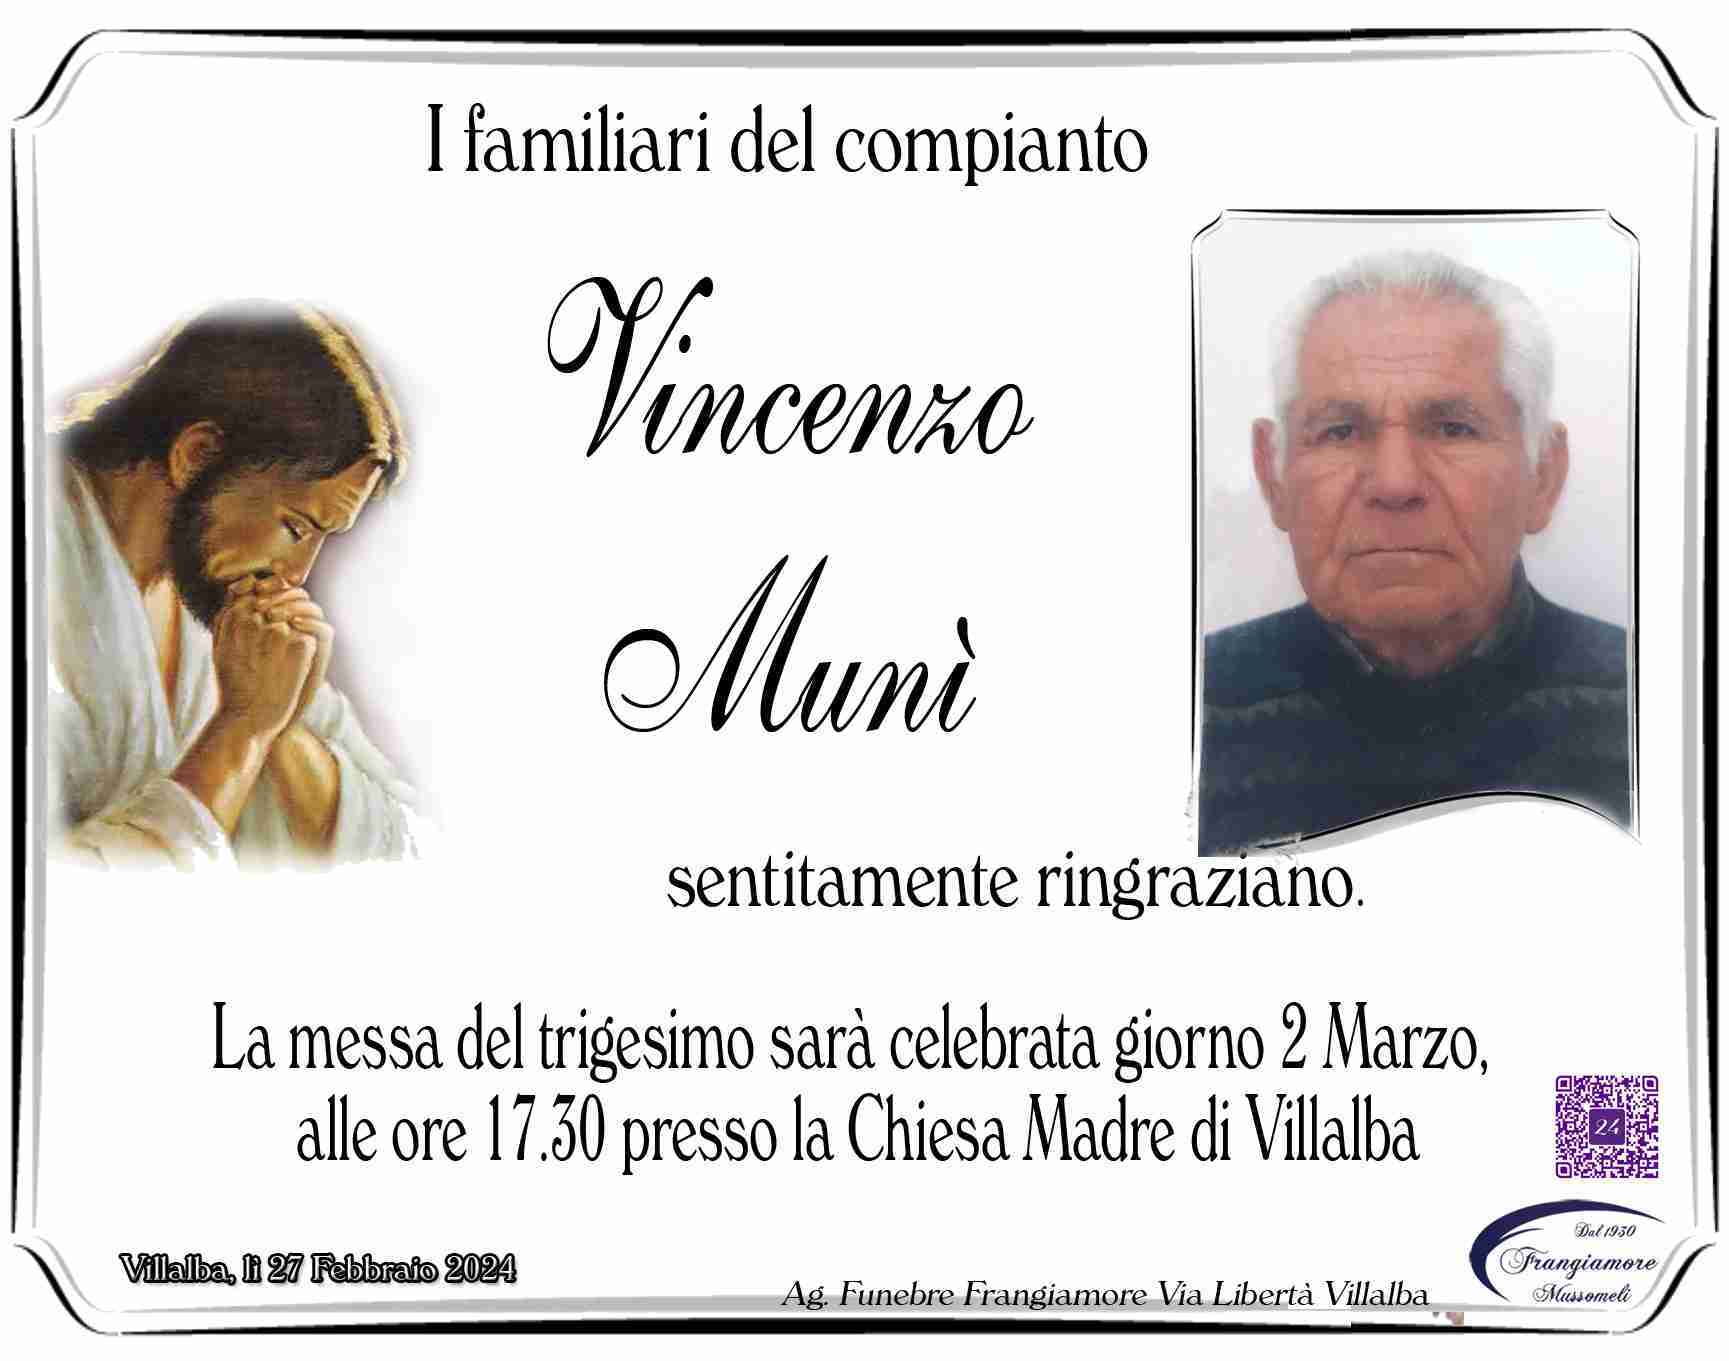 Vincenzo Munì